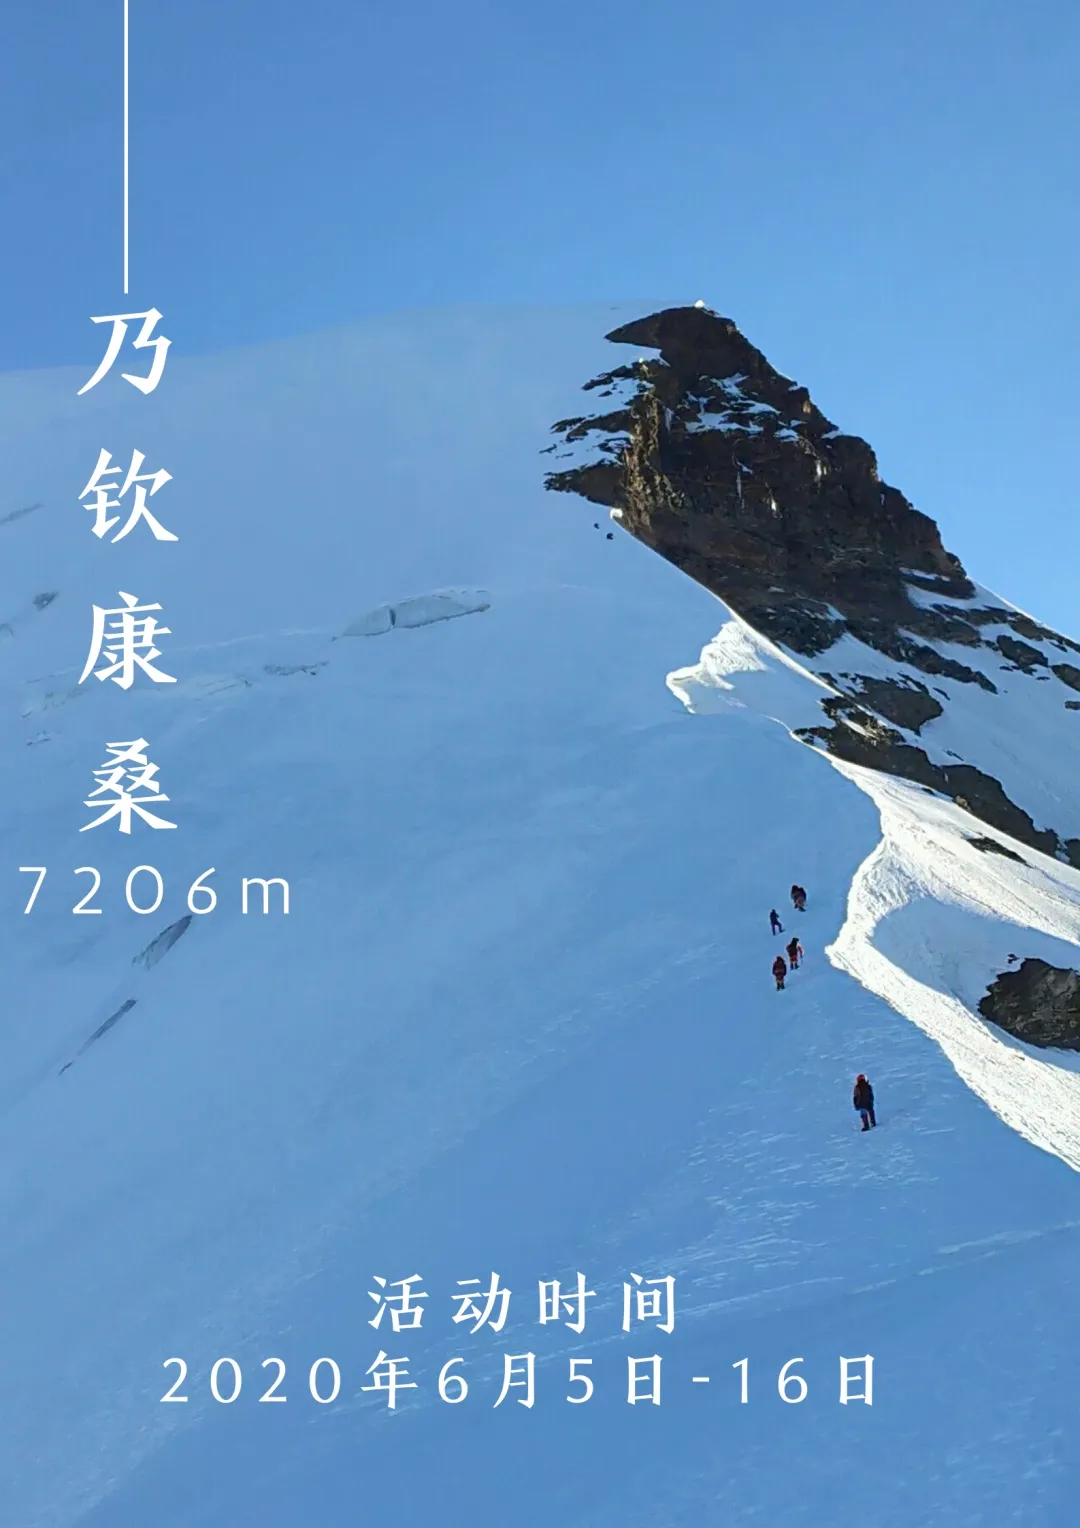 2020年乃欽康桑峰登山活動(圖2)